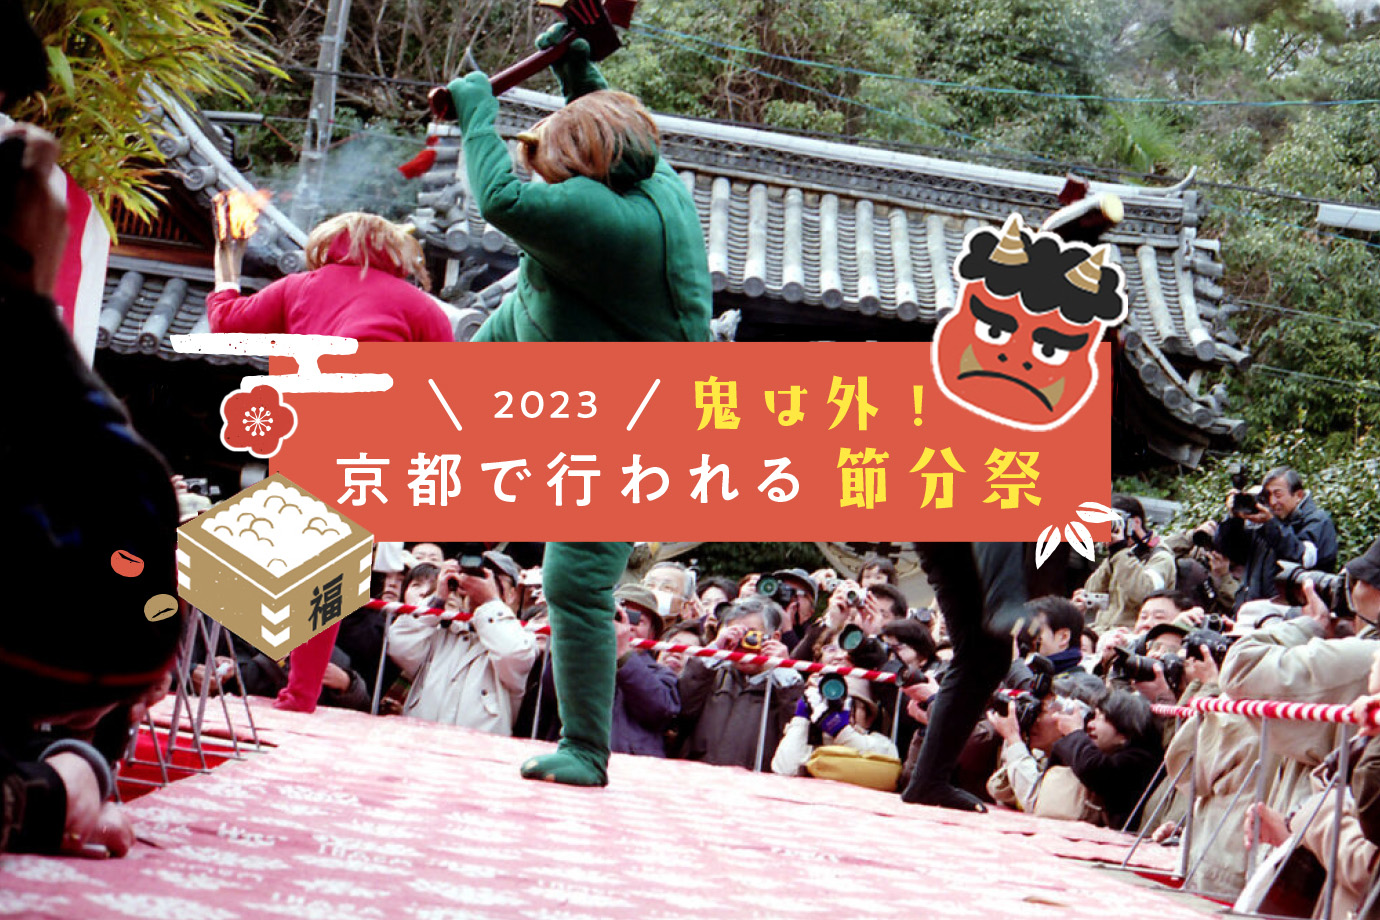 Setsubun, The Bean Throwing Festival